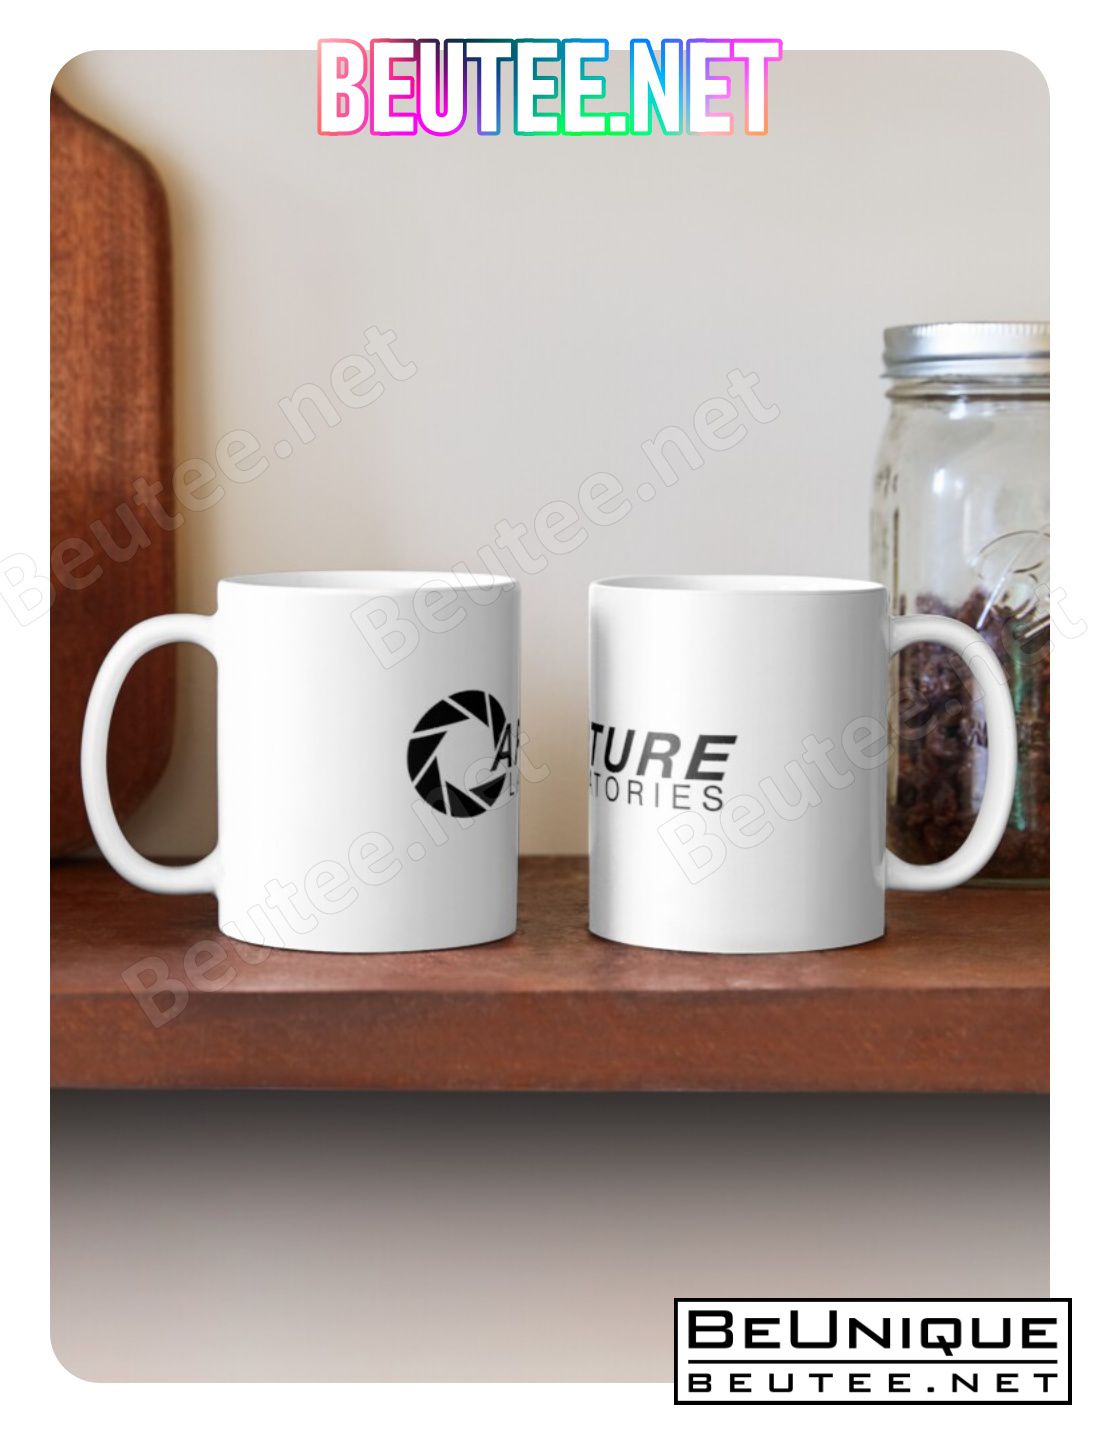 Aperture Mug Coffee Mug